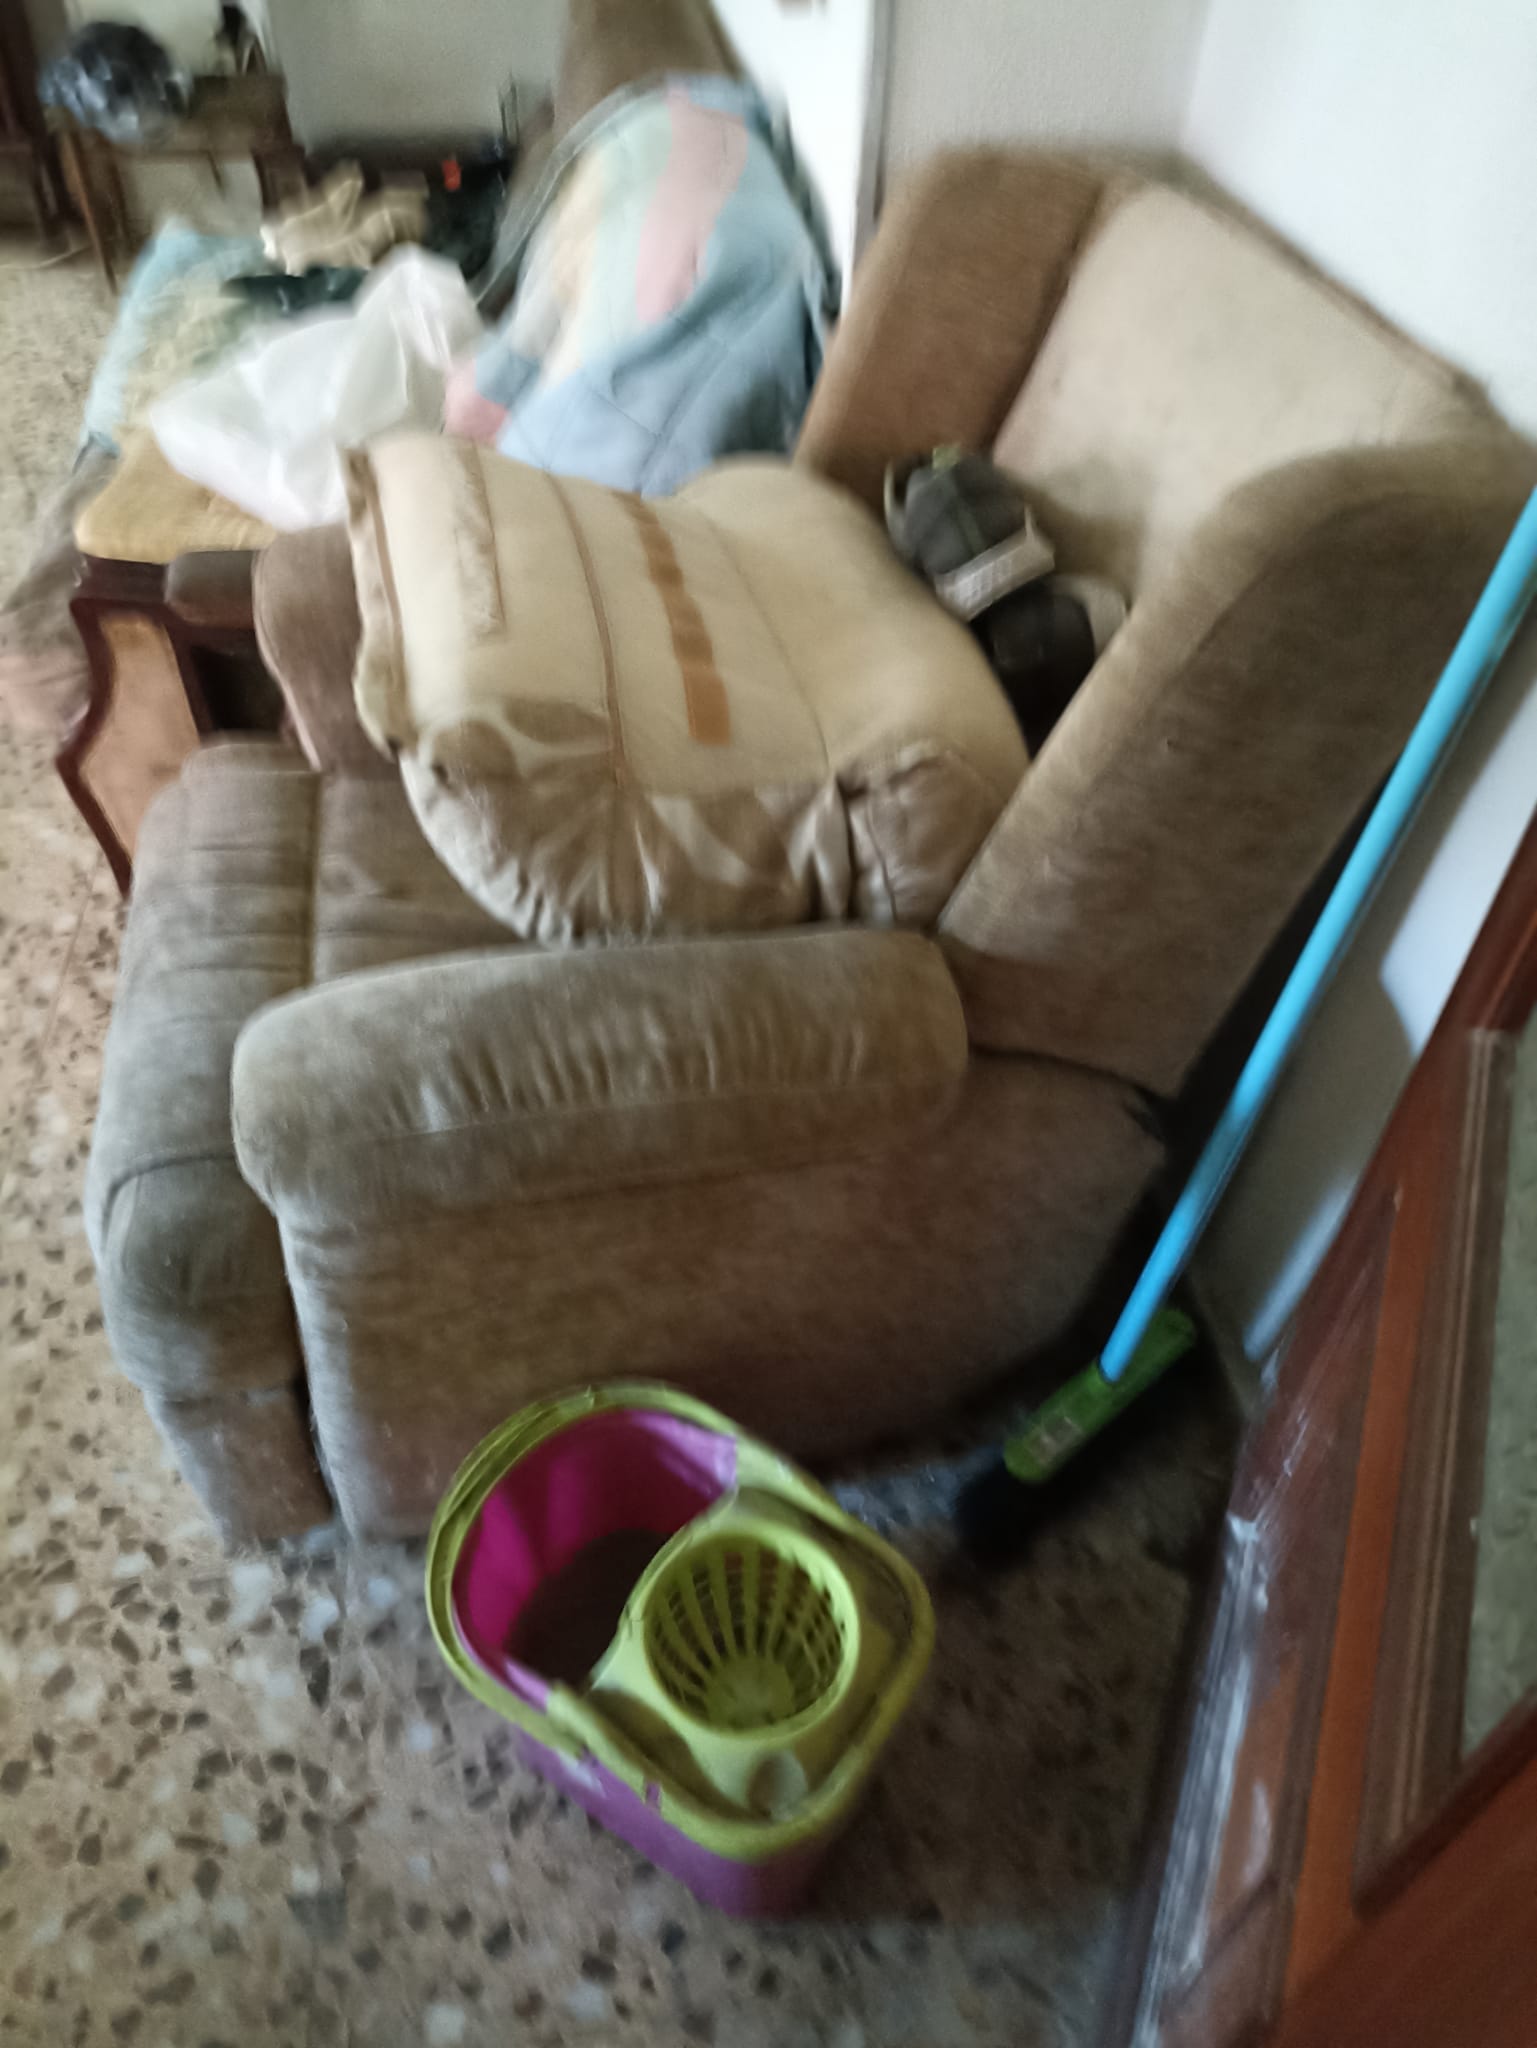 Recogida de muebles en Vilaplana | Despeje su hogar de objetos innecesarios